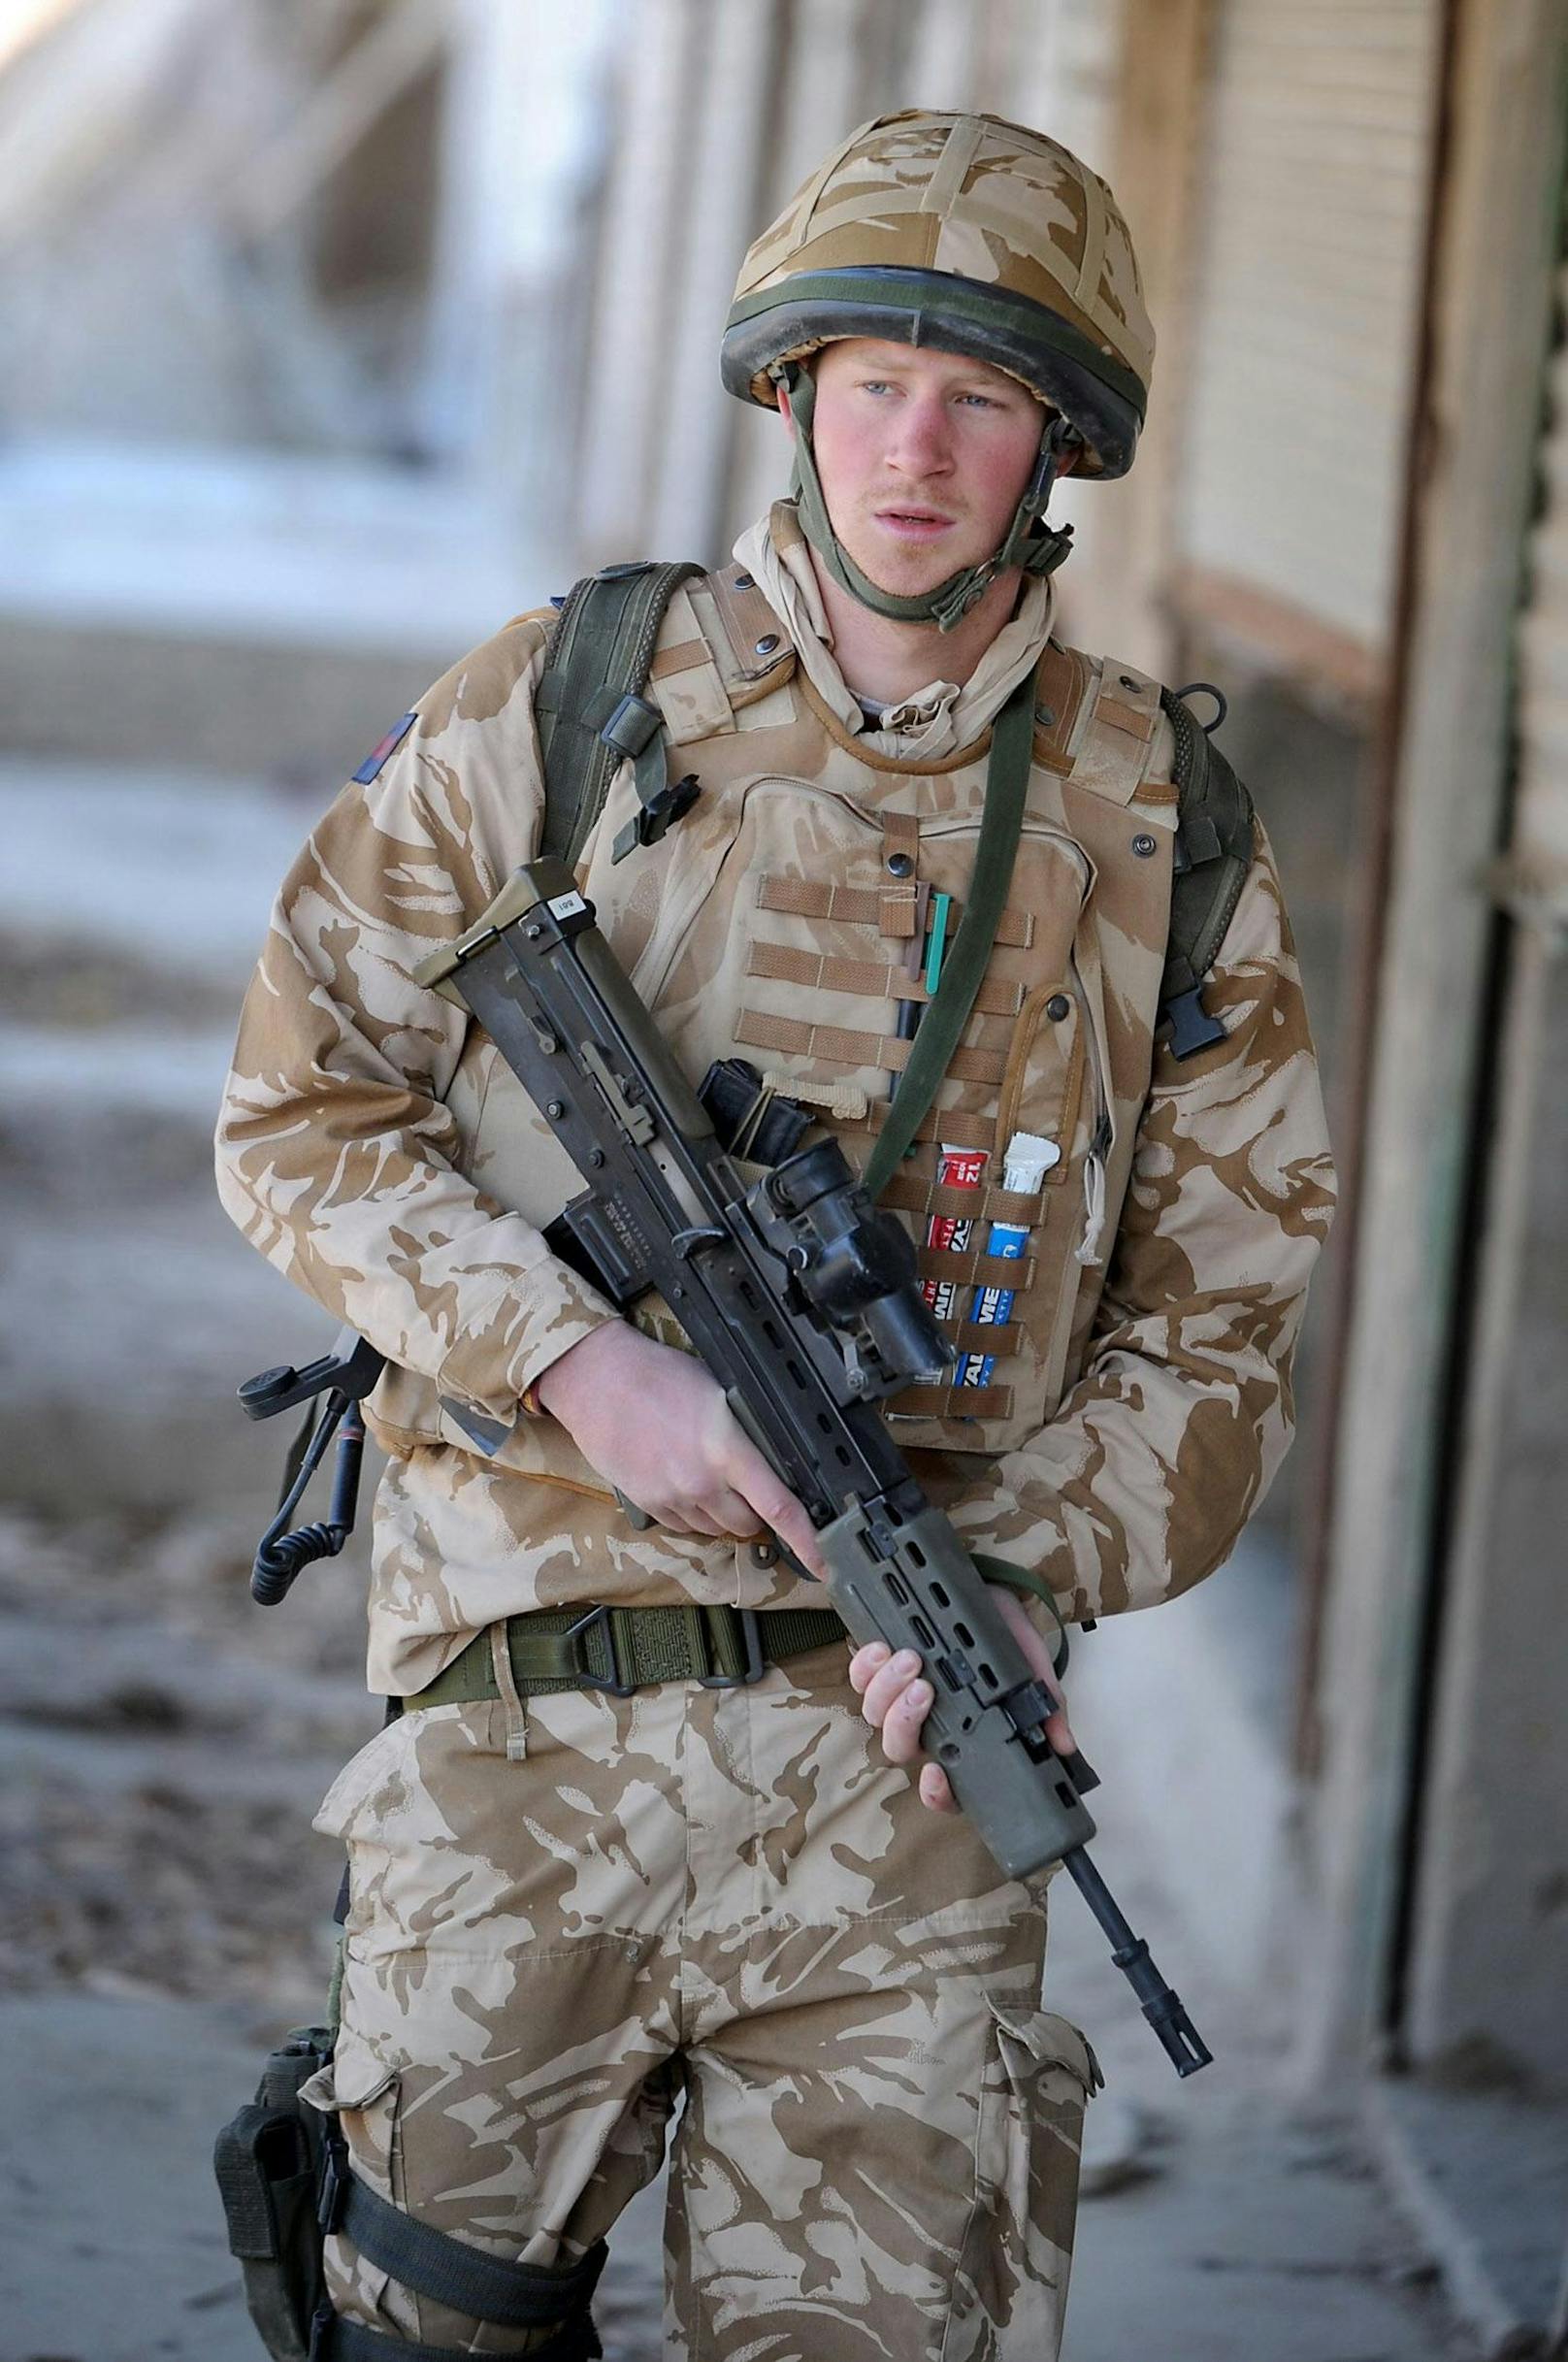 Prinz Harry hat bei seinem Einsatz im Afghanistan 25 Soldaten getötet.